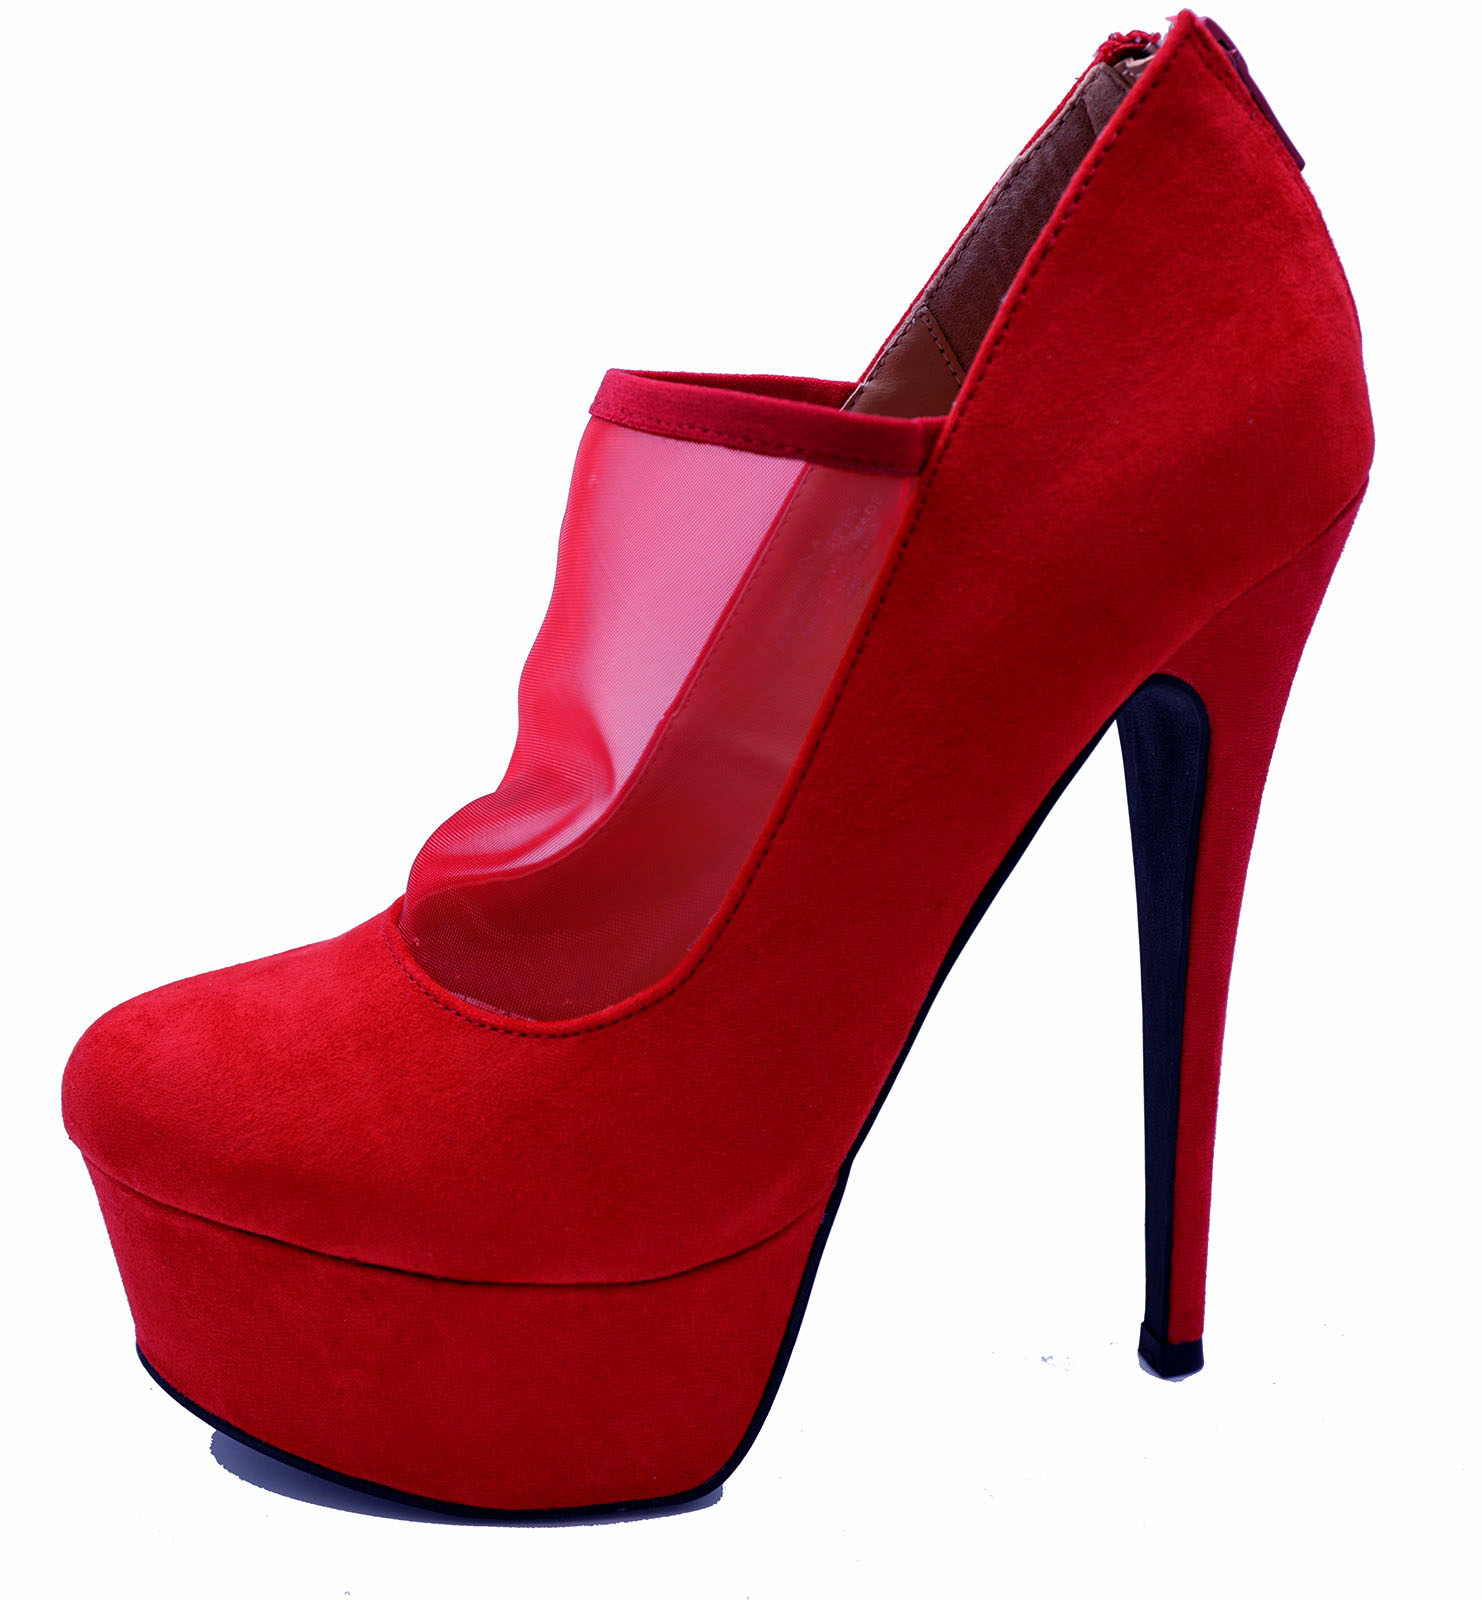 red stiletto platform heels